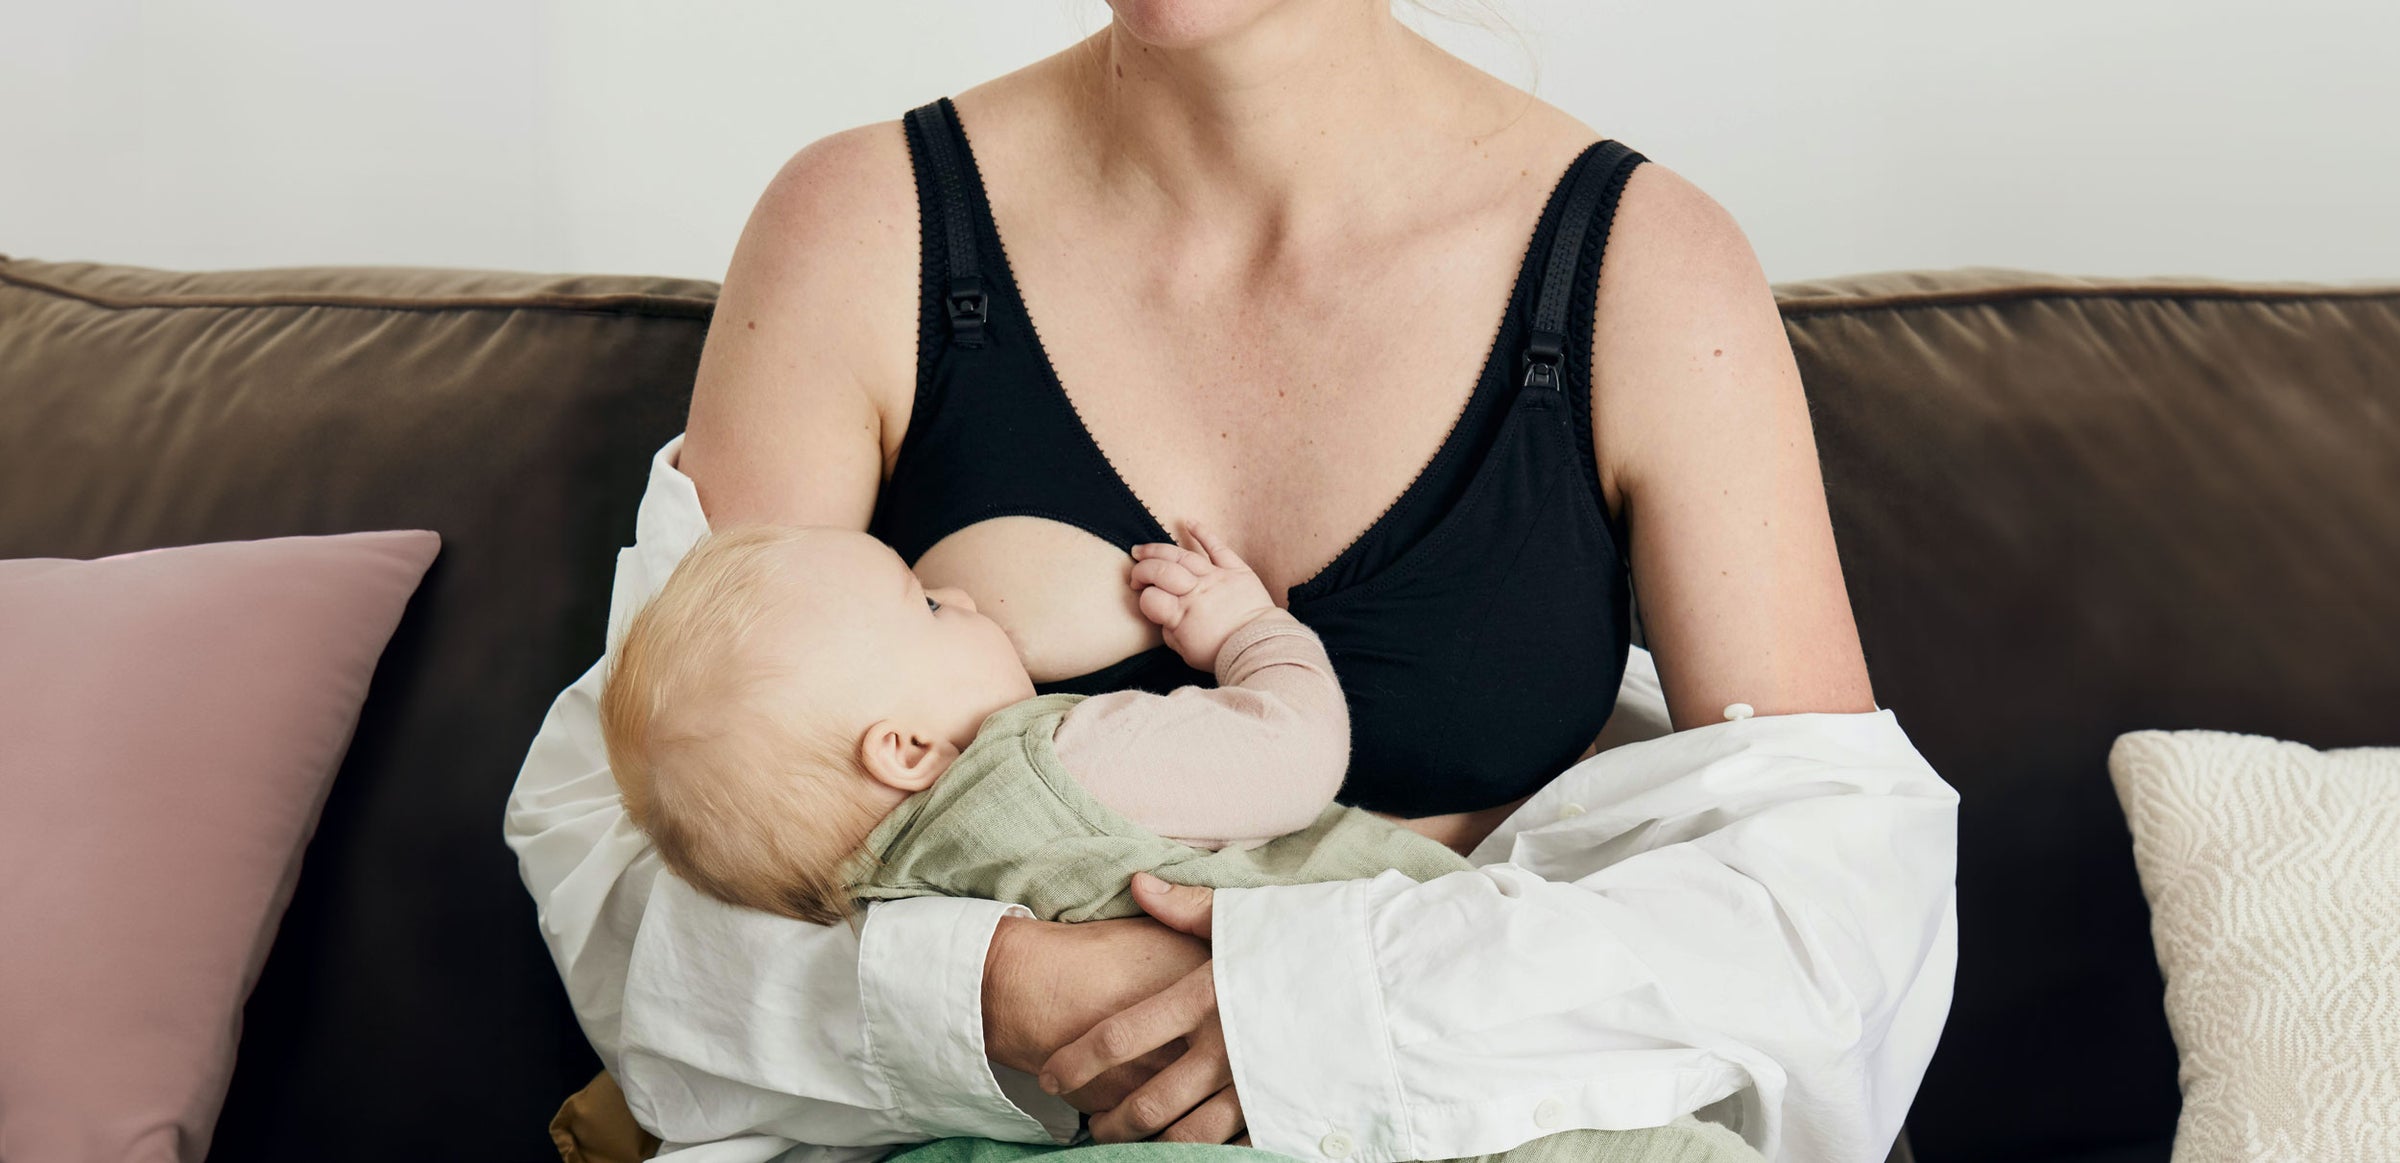 Belle Maternity Bra – Videris Lingerie